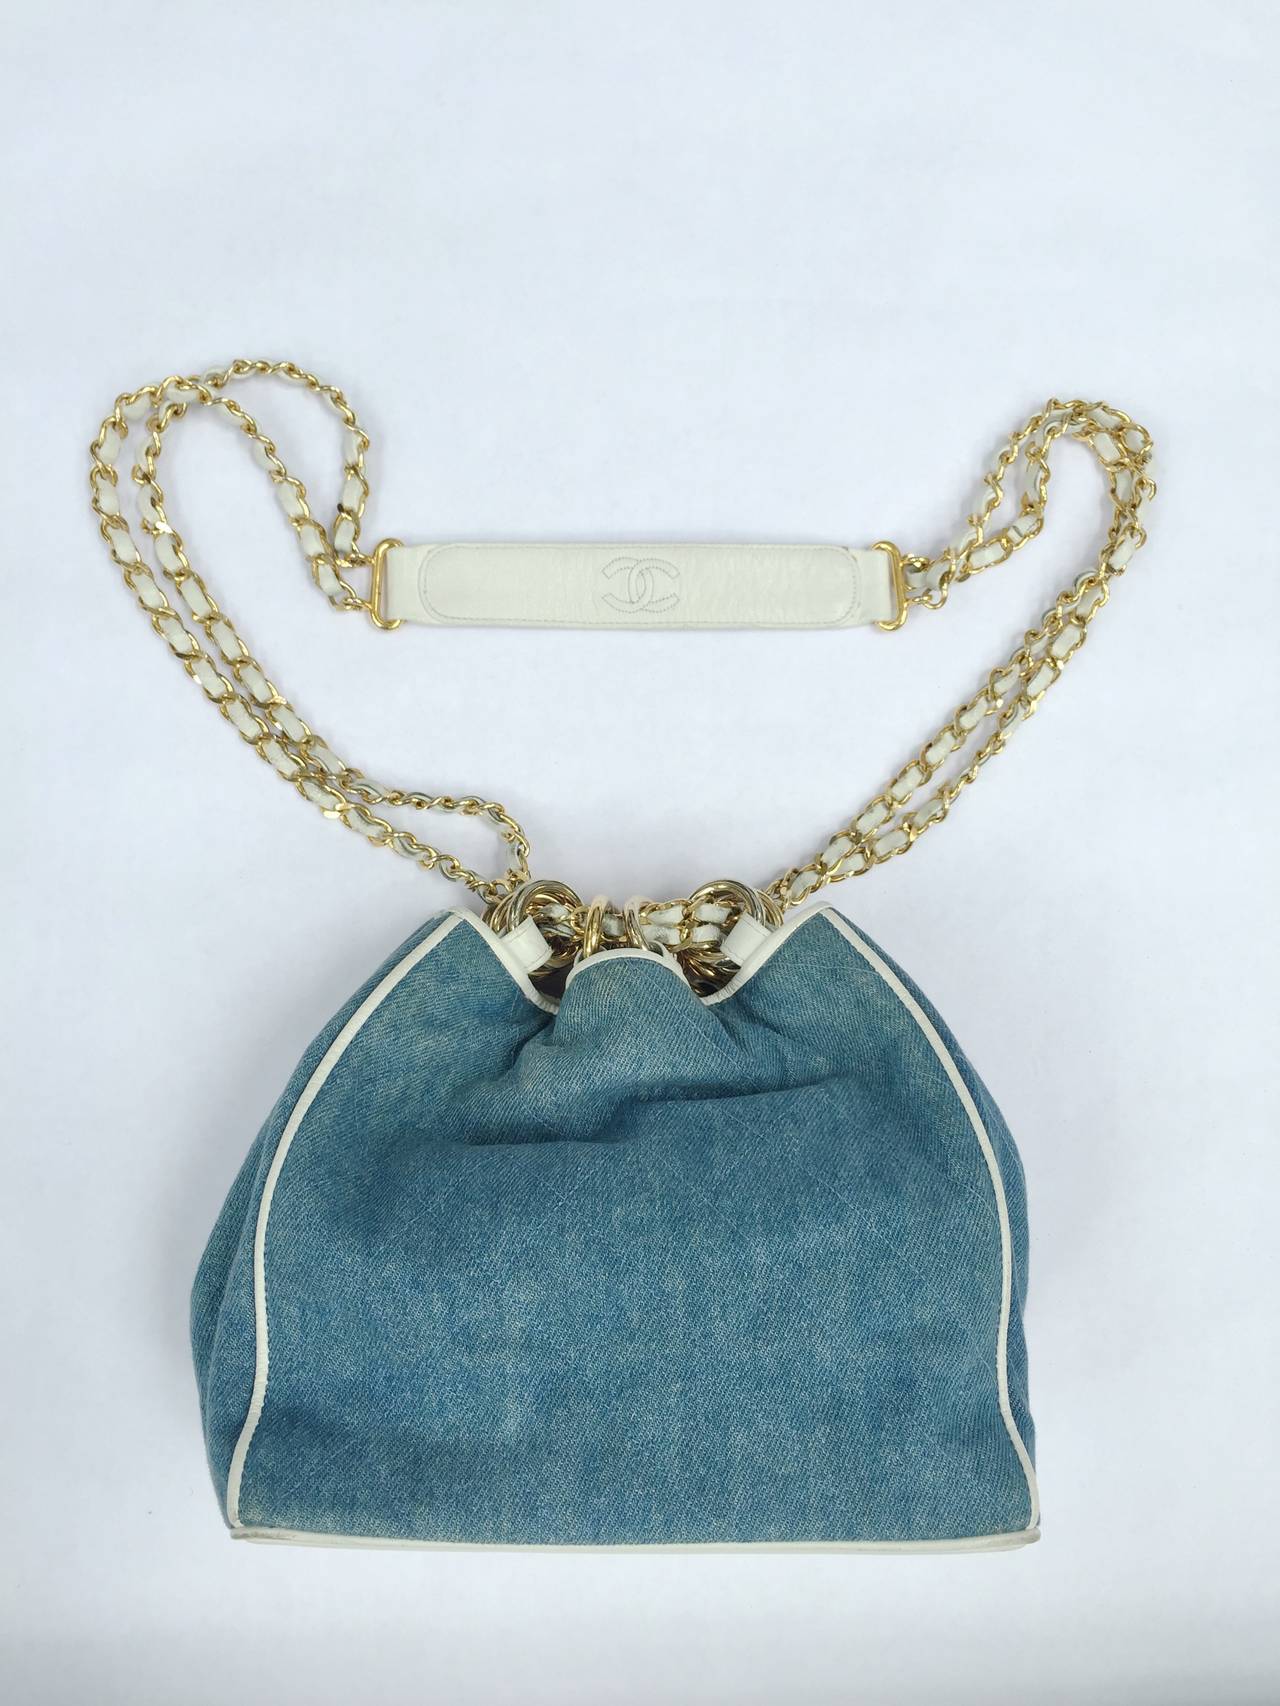 Blue Chanel denim white leather trim shoulder handbag.